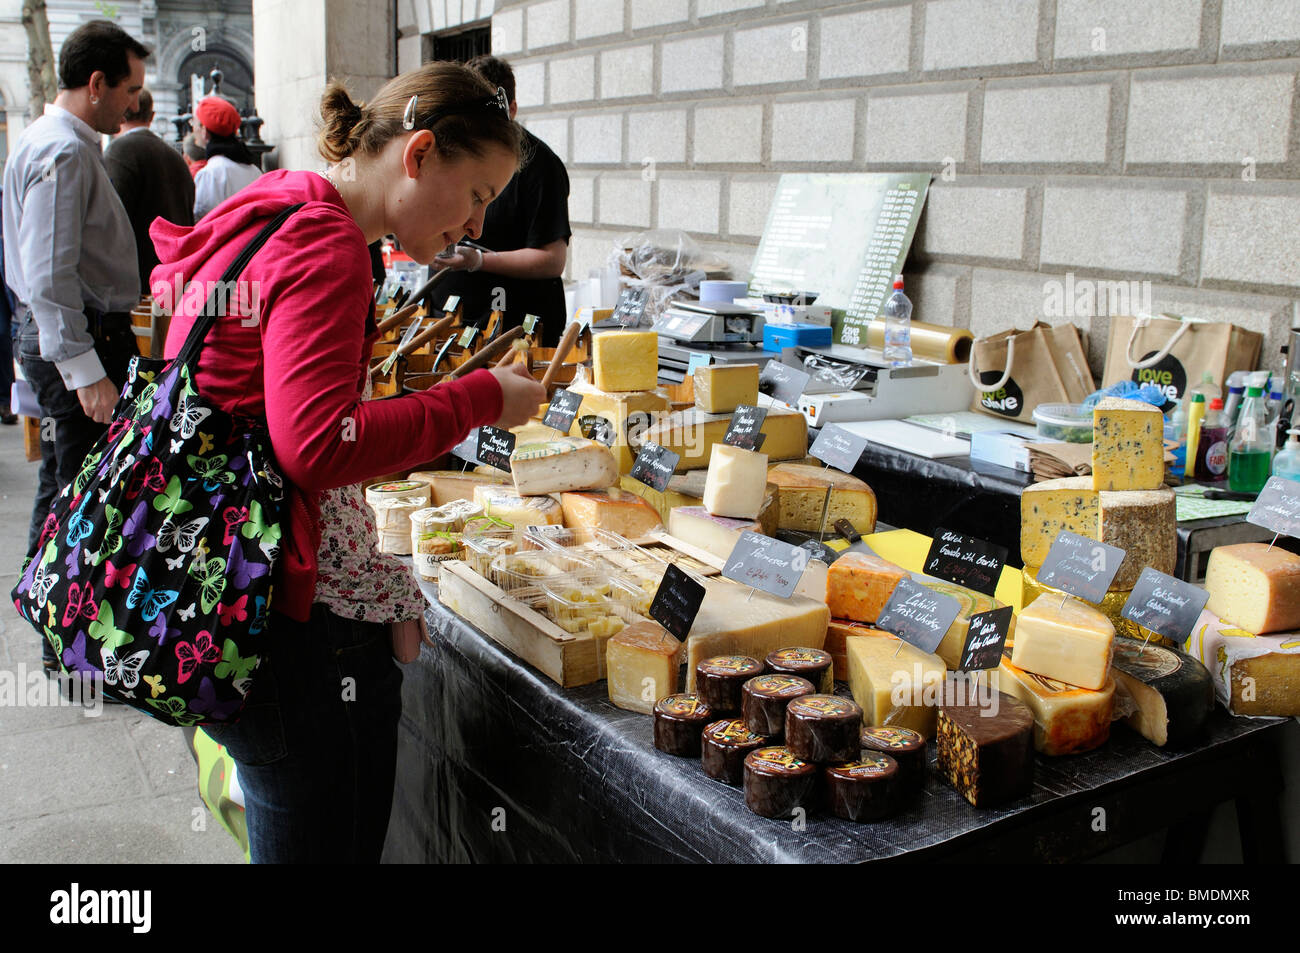 Jeune femme la sélection d'un marché de producteurs de fromages fromage côté calage La Banque d'Irlande Dublin Ireland Banque D'Images